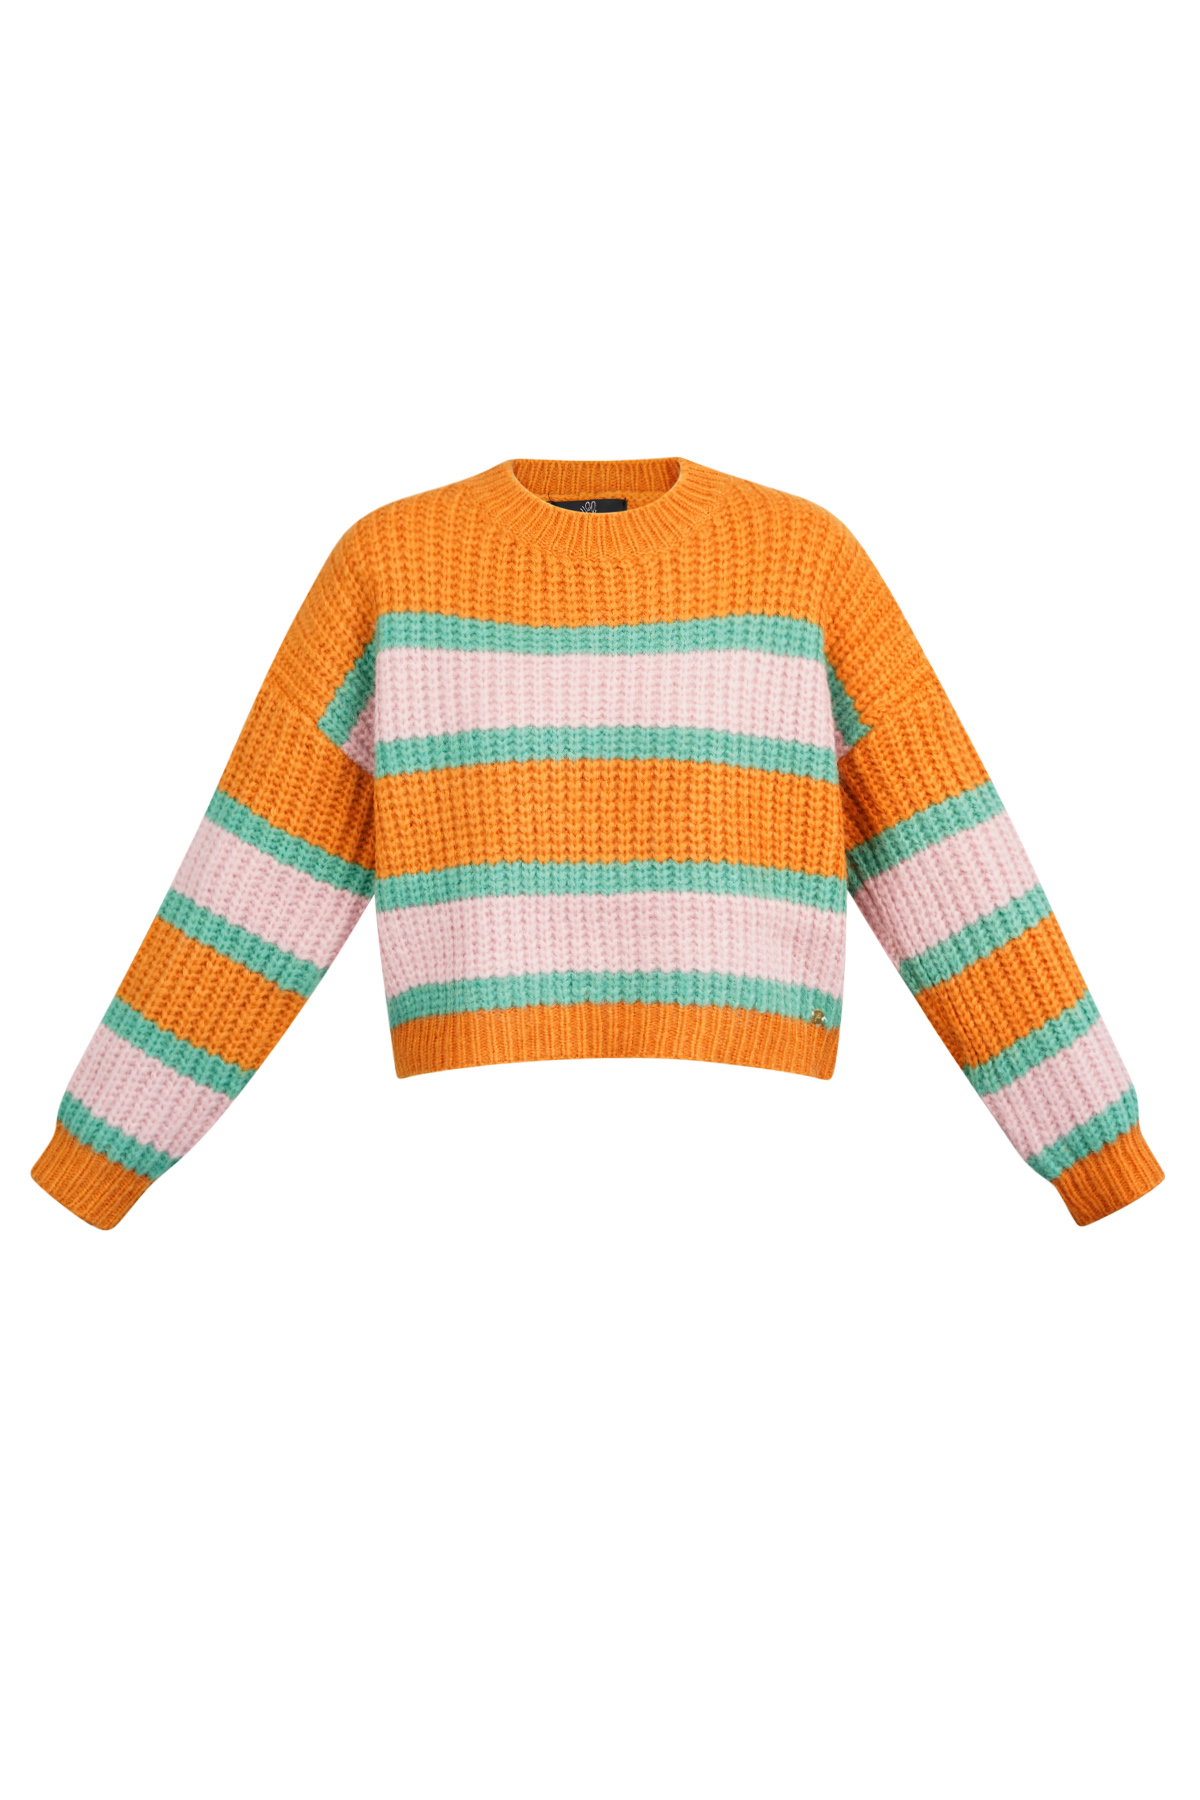 Gestrickter dreifarbiger Pullover mit Streifen – Orange-Rosa